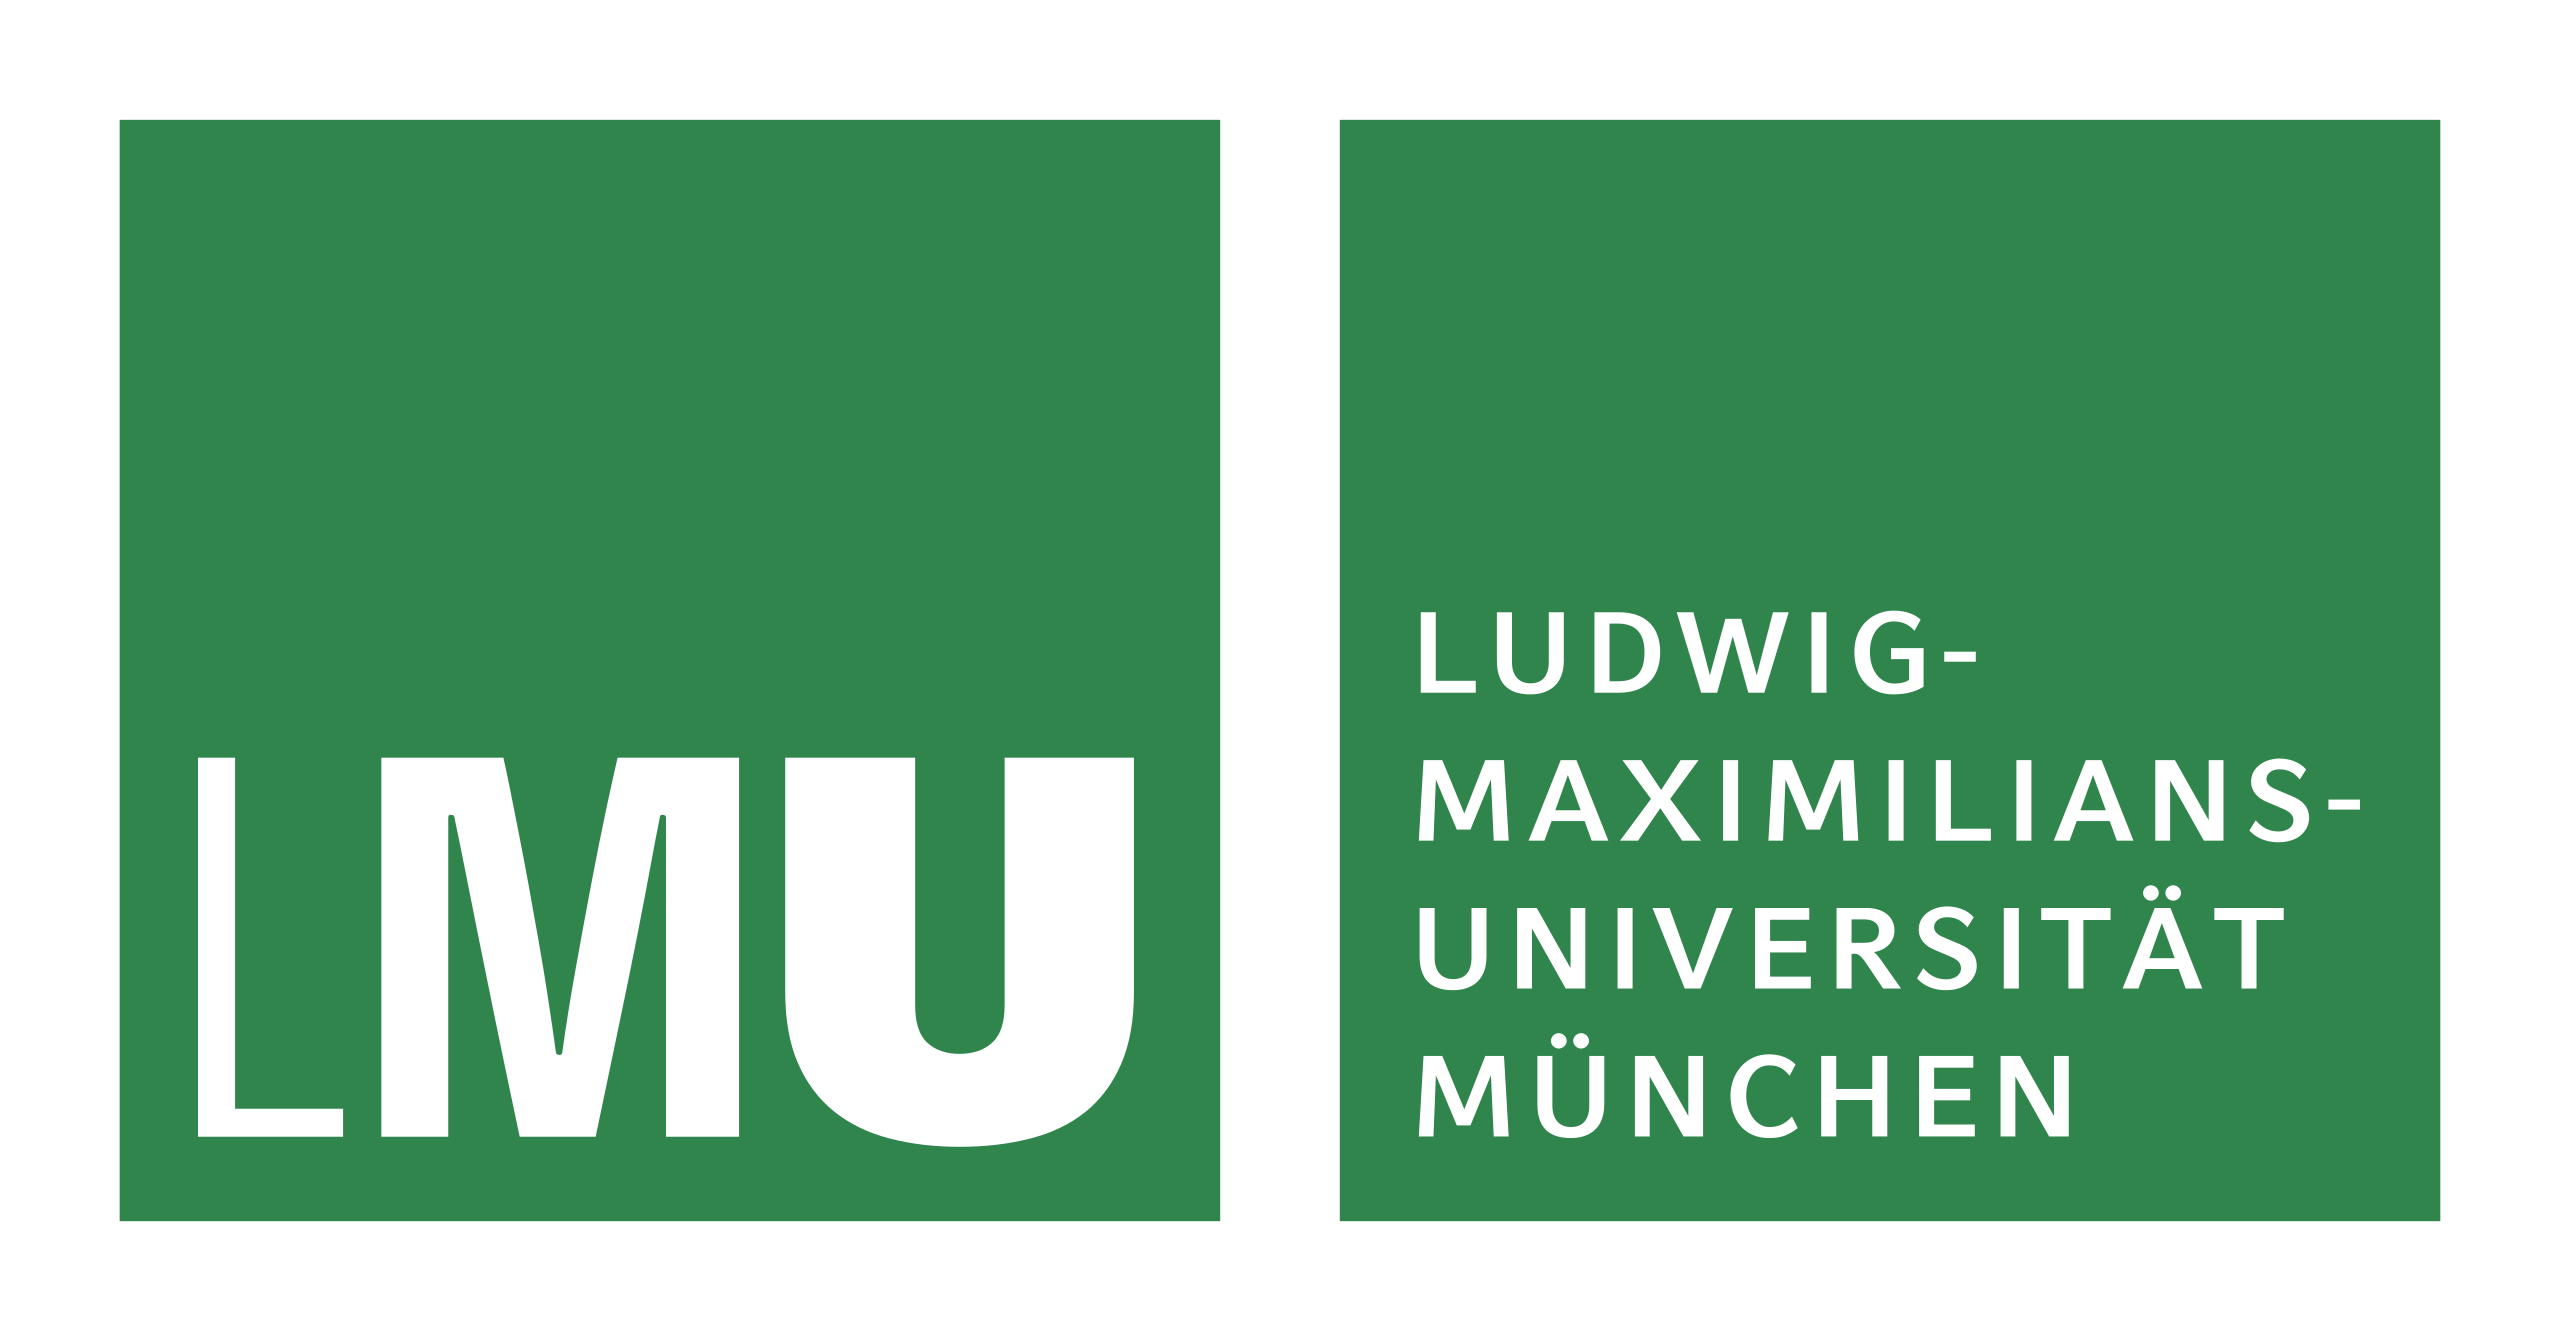 Ludwig Maximilians-Universiteit